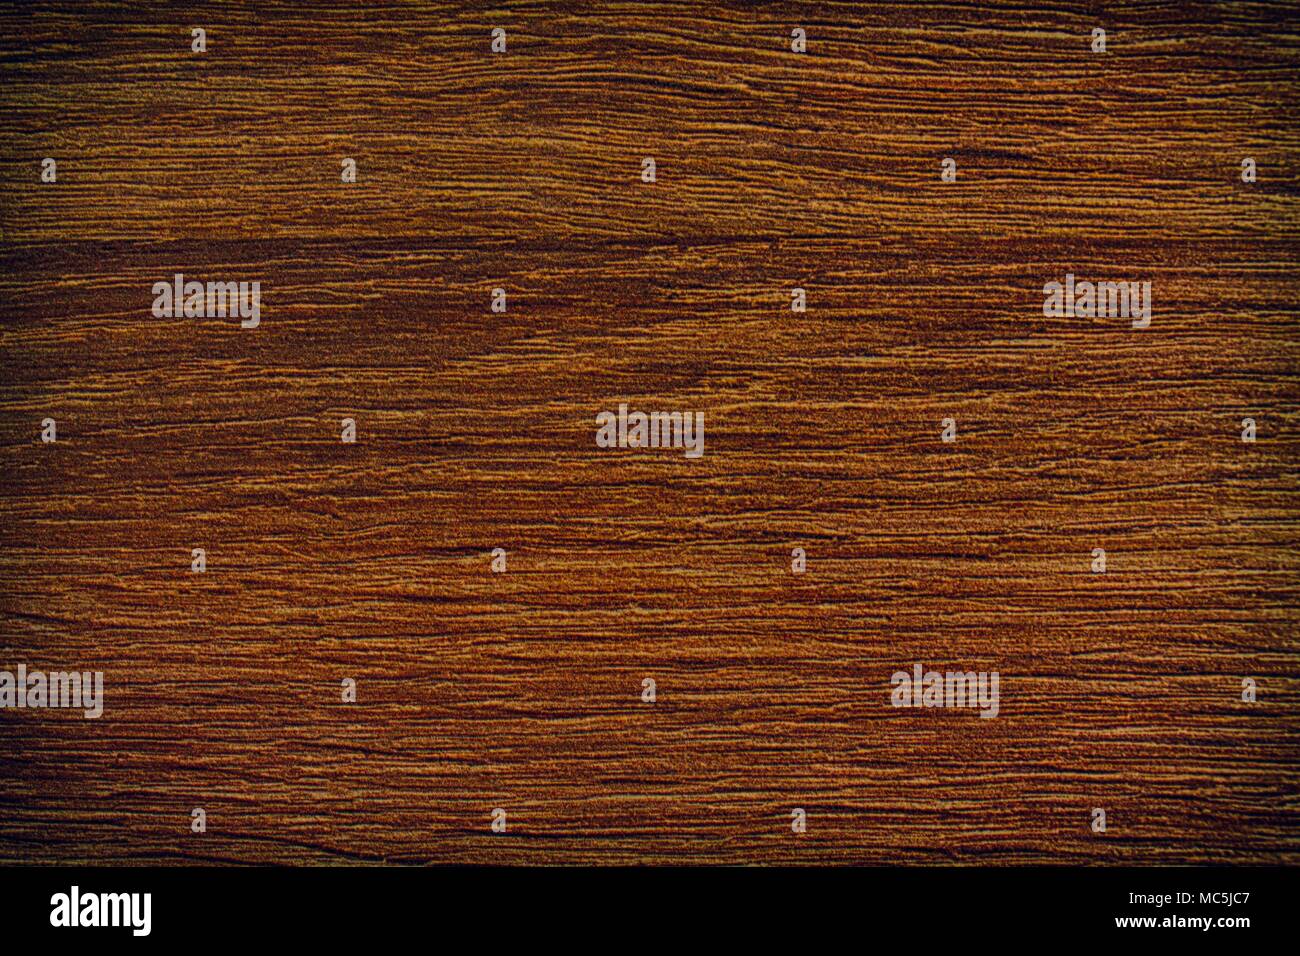 Holz Textur, leere Holz Hintergrund, rissige Oberfläche. Stockfoto